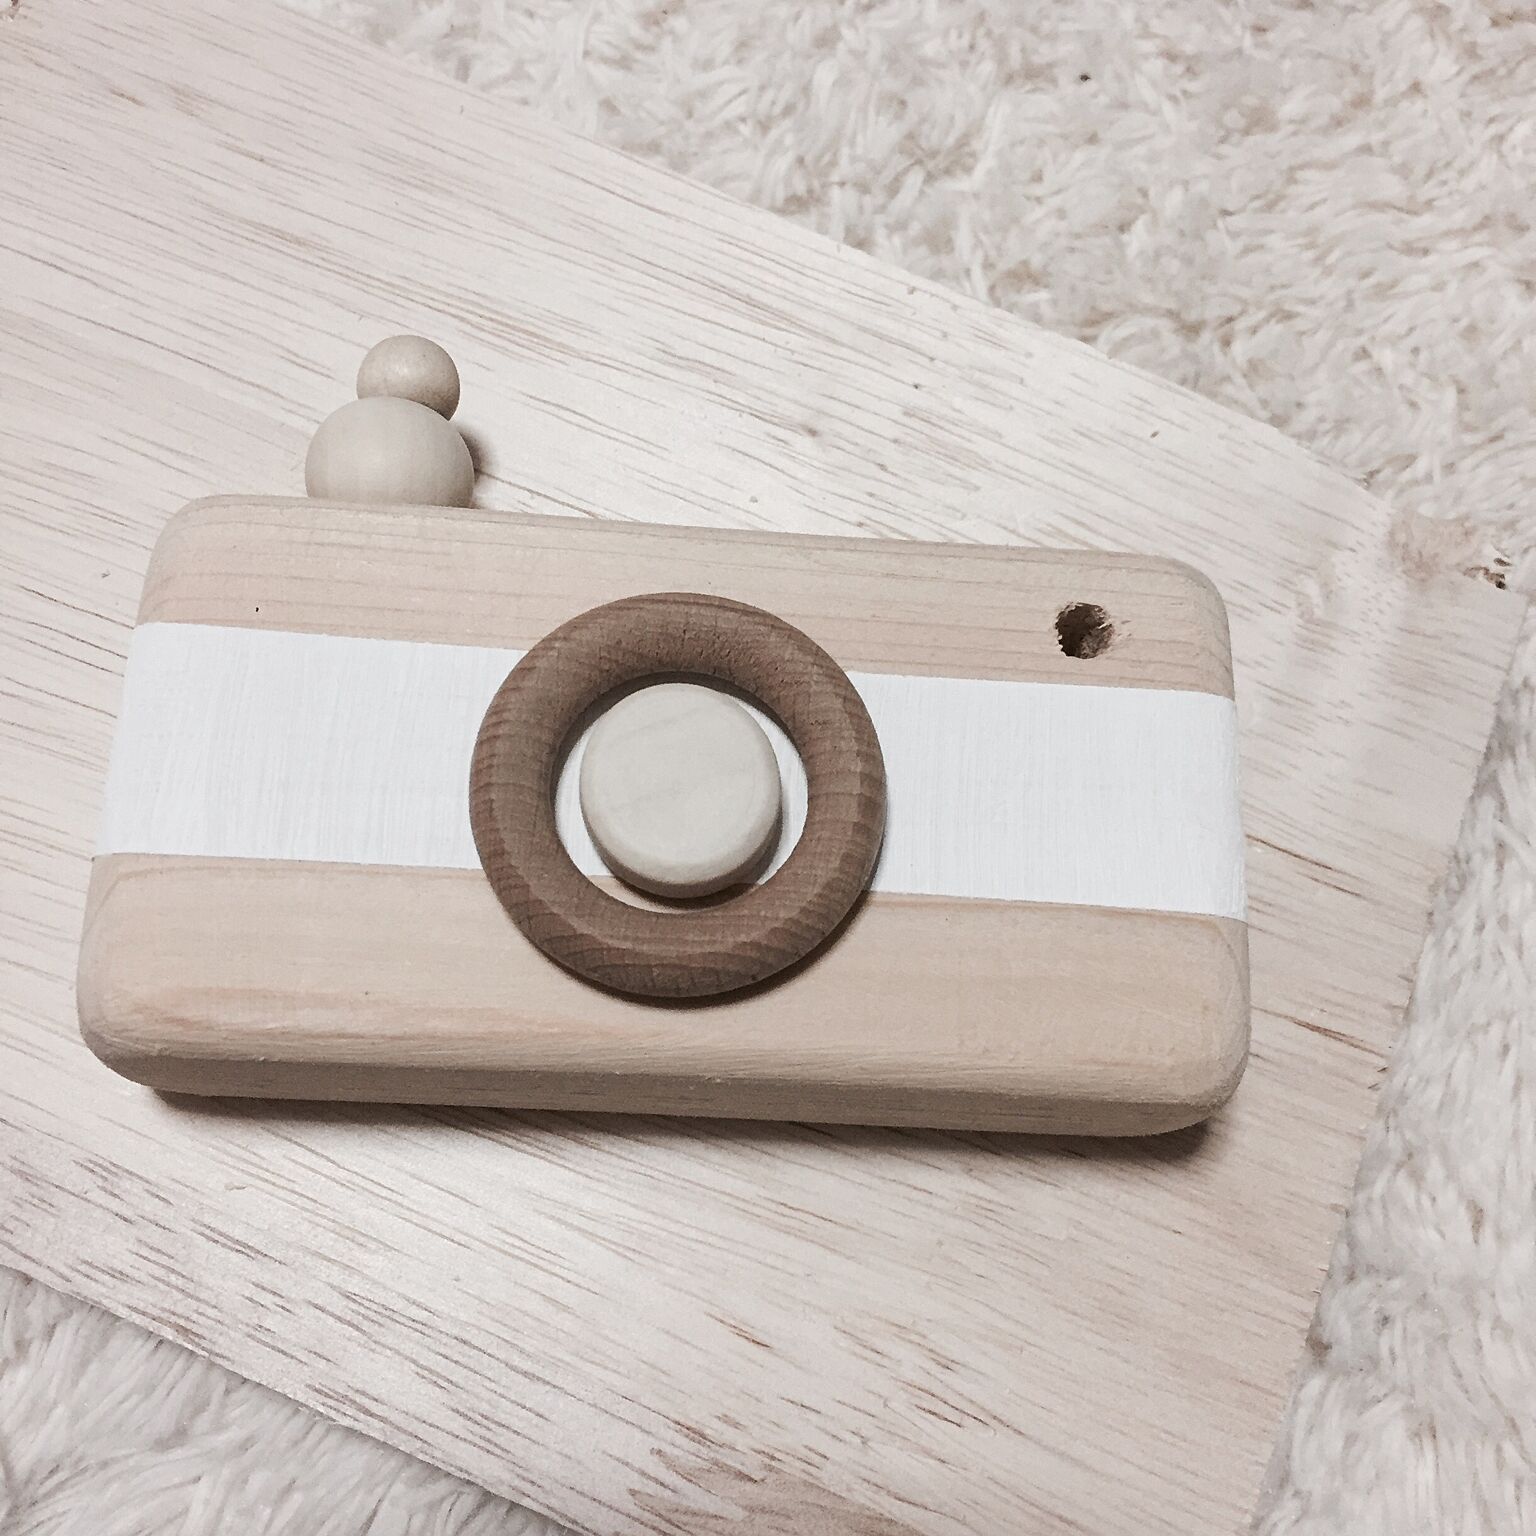 こちらは、木製のハンドメイドのカメラです。木のパーツの組み合わせと、ナチュラルな色合いで優しい手作りおもちゃに仕上がっています。